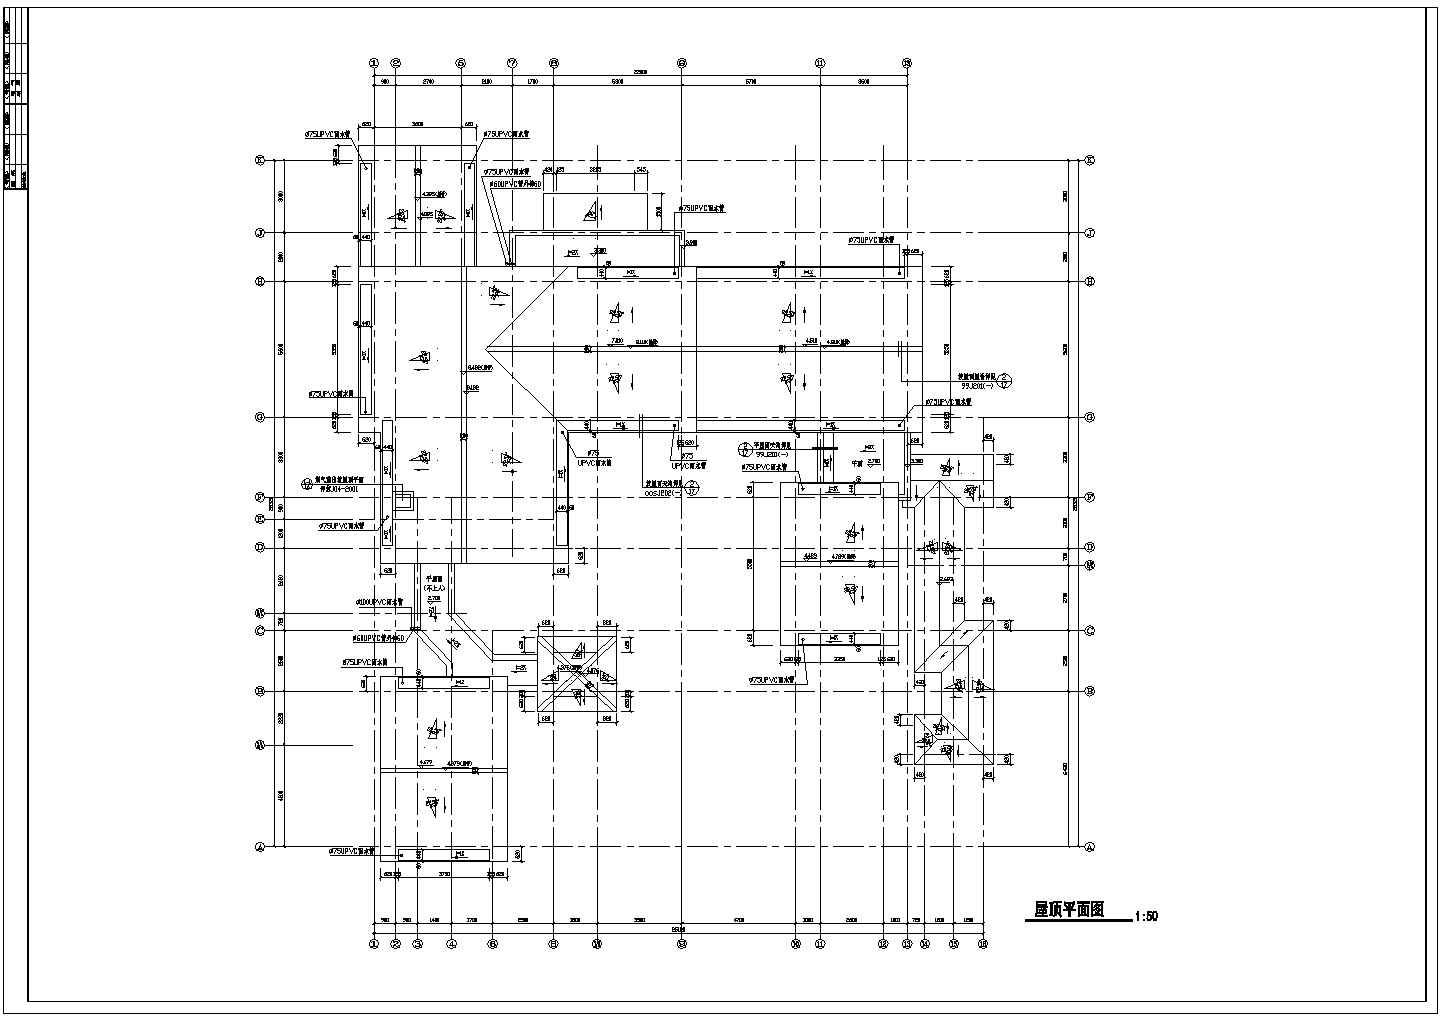 扬中市装修设计某二层仿古别墅建筑结构施工图【含施工图】